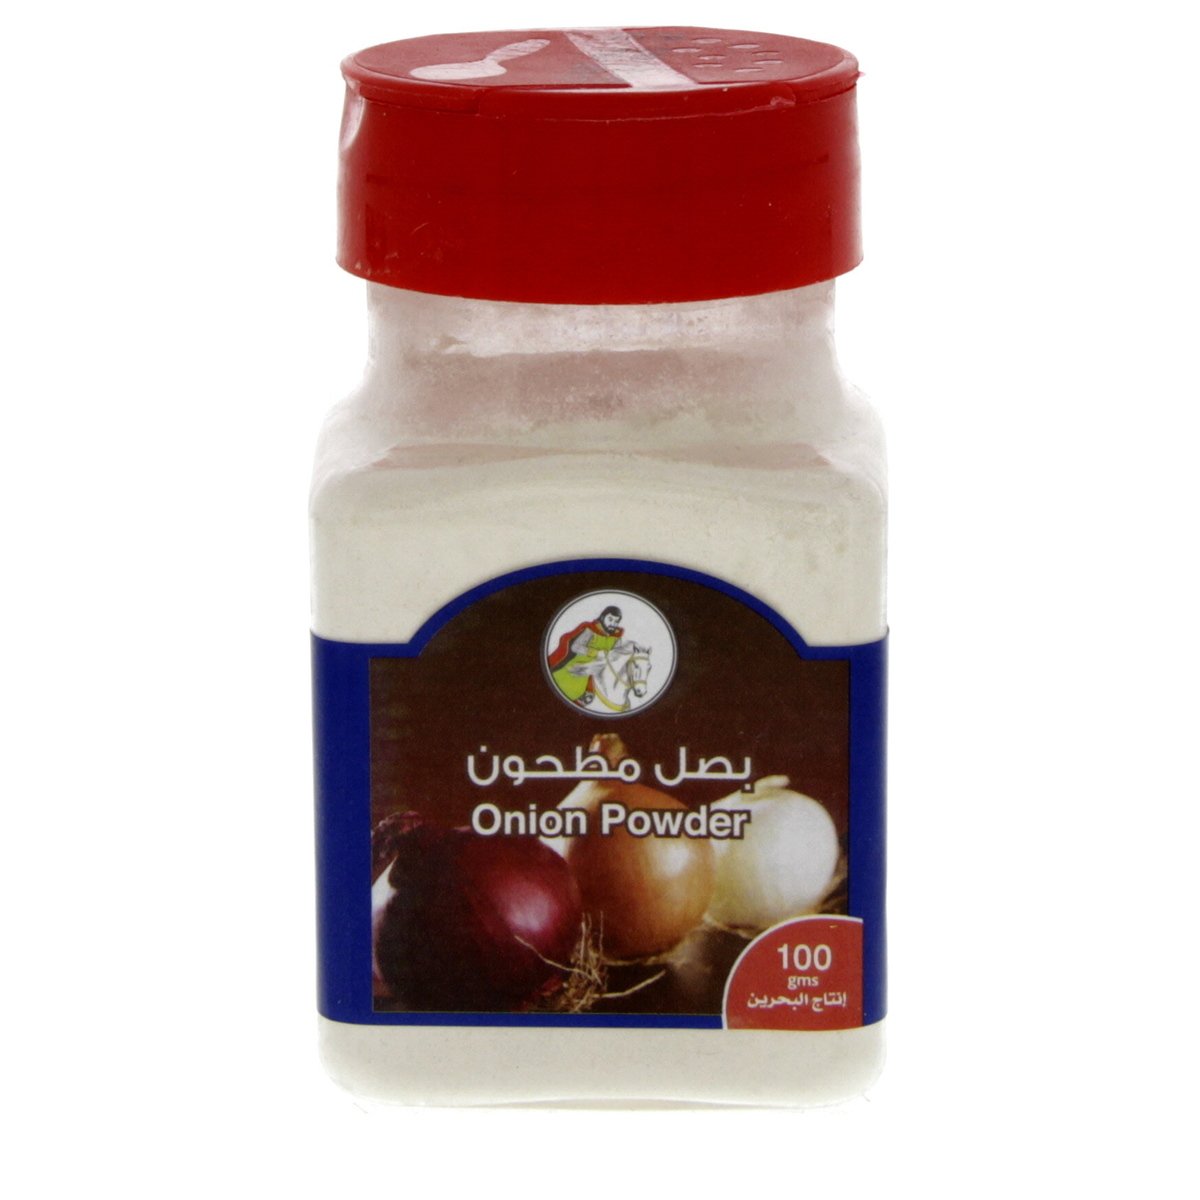 Al Fares Onion Powder 100 g